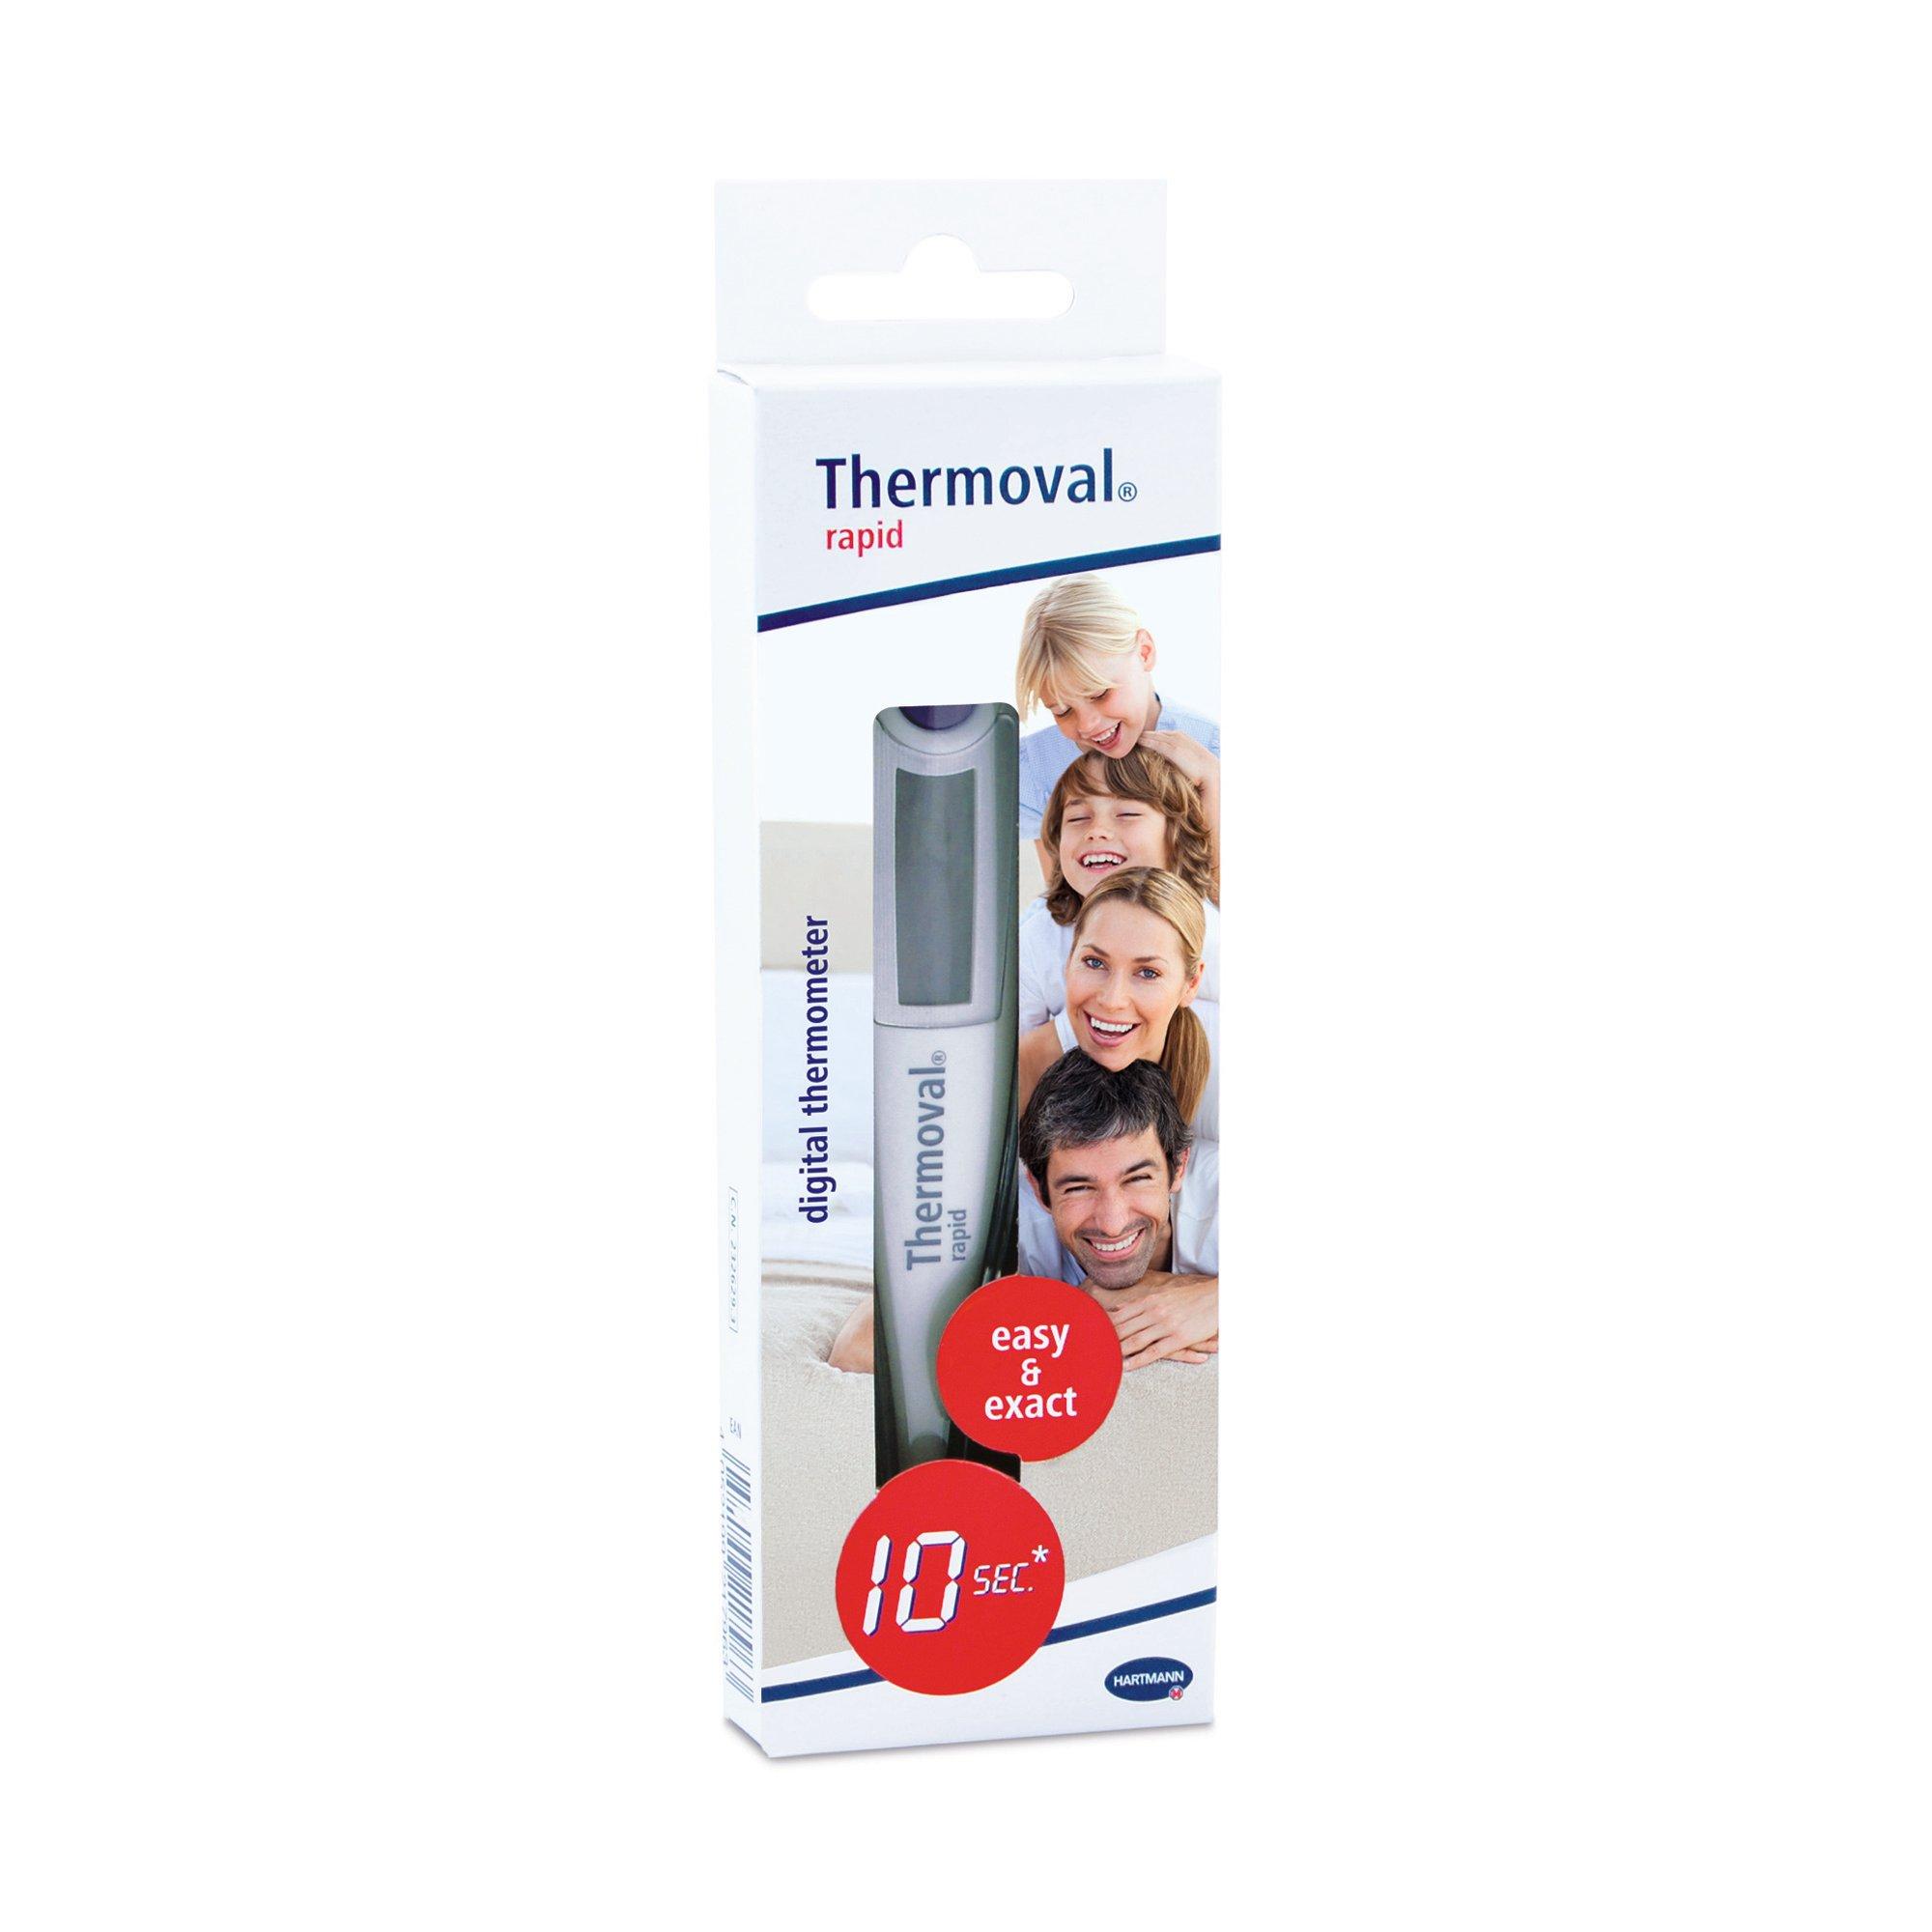 Thermoval  Termometro clinico rapid 10 sec 